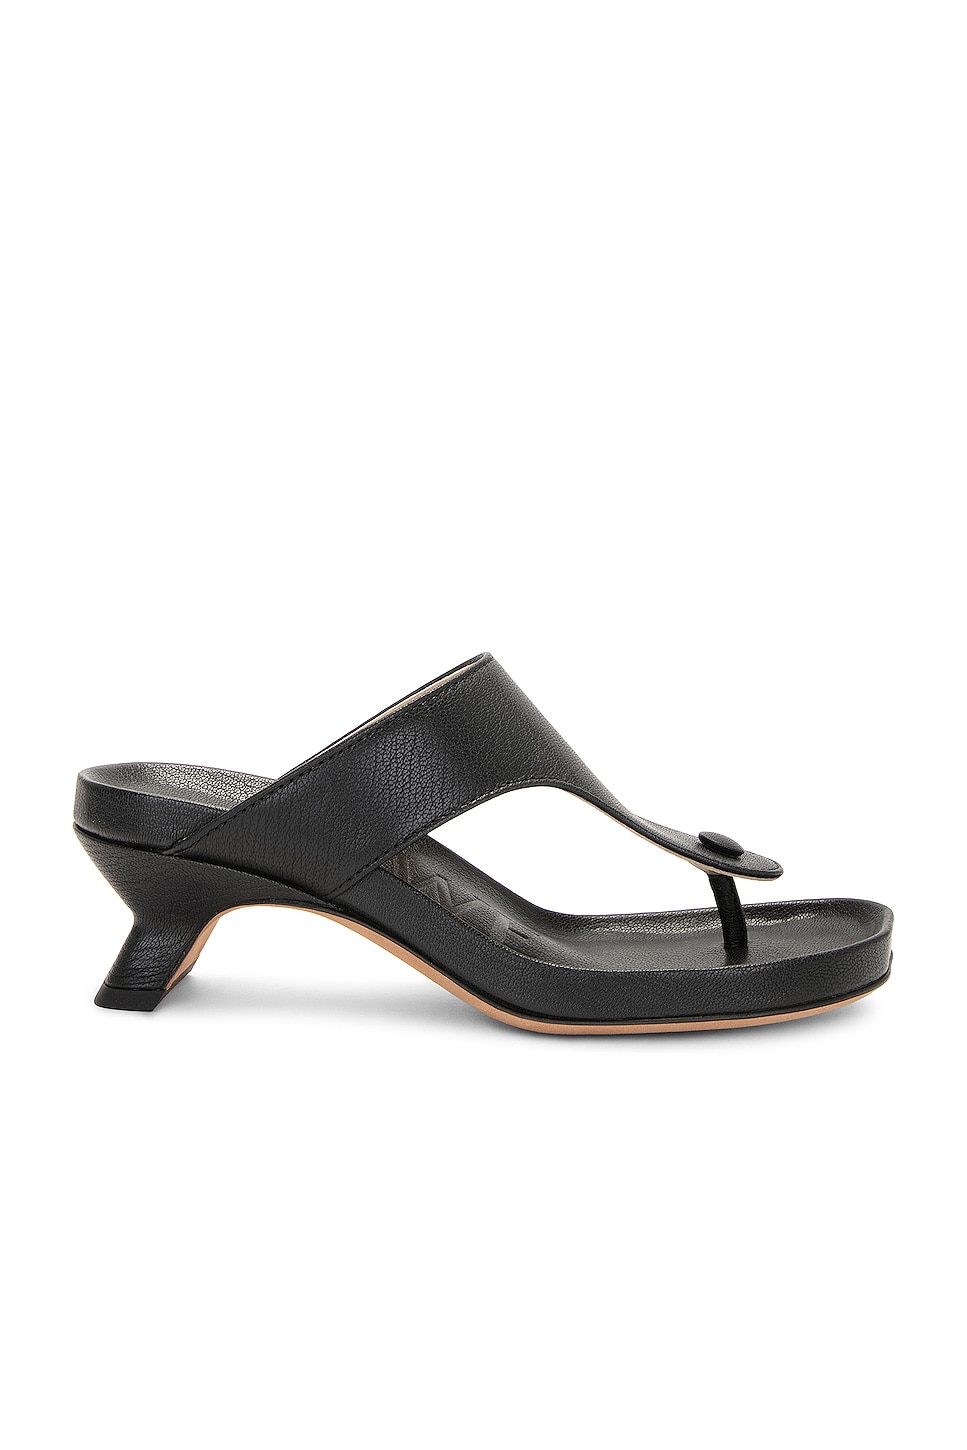 Image 1 of Loewe Ease Sandal in Black